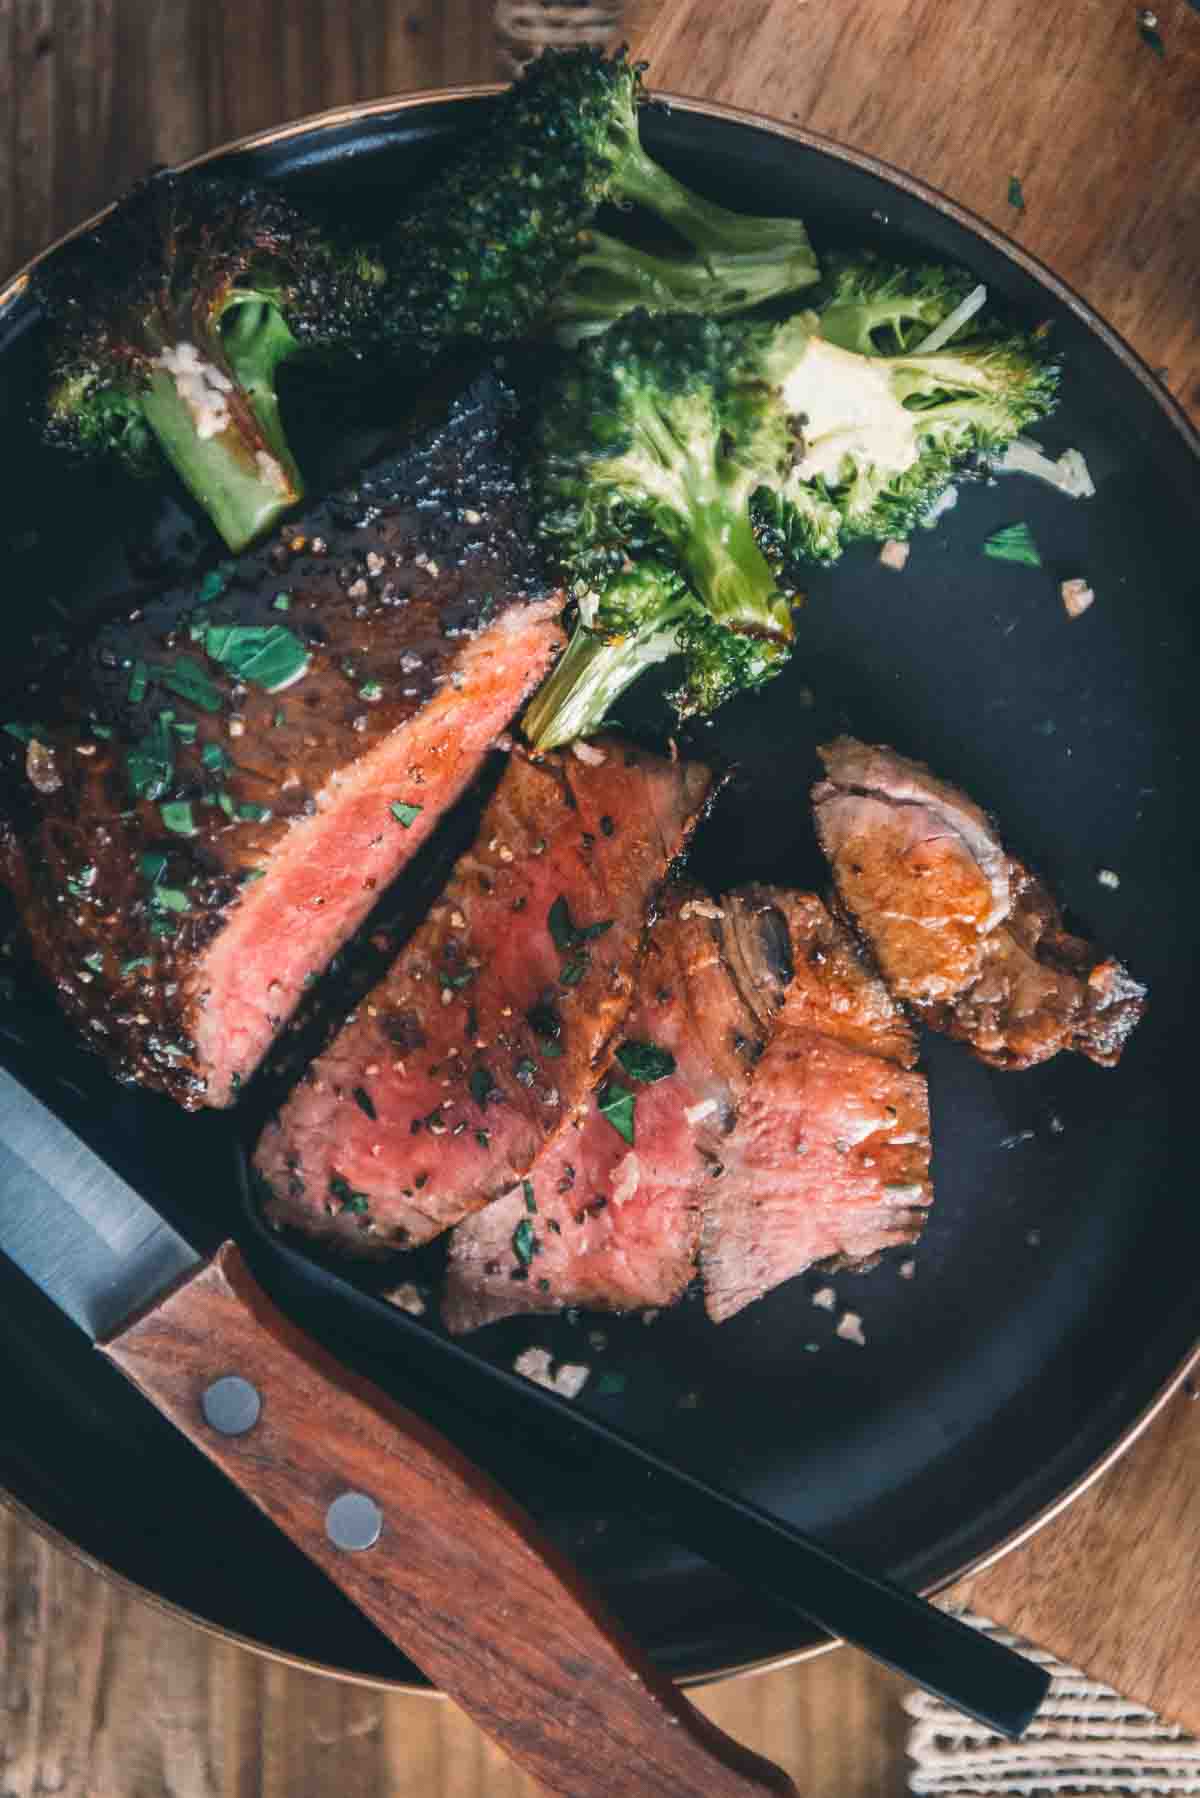 Tender steak with medium rare center sliced for serving. 